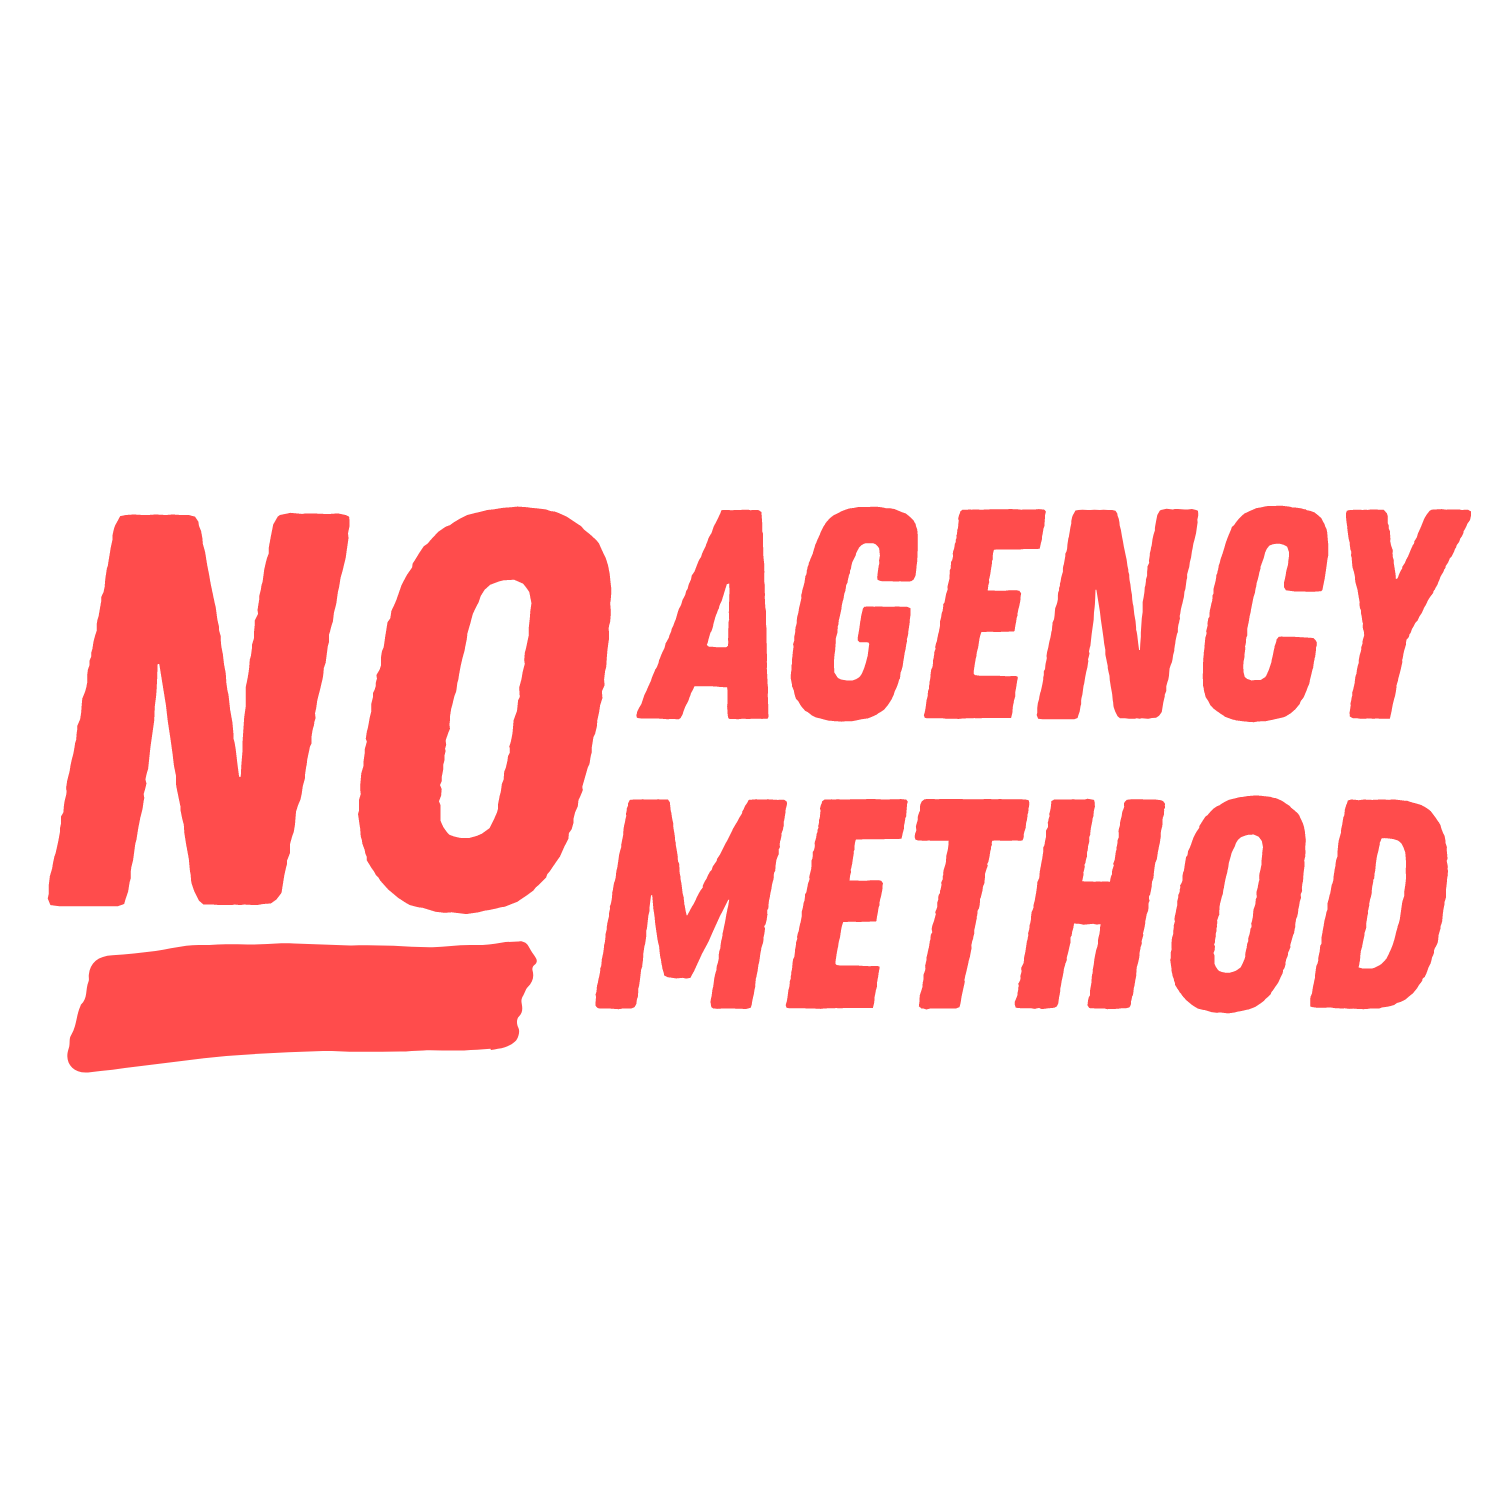 No Agency Method | DIY PR